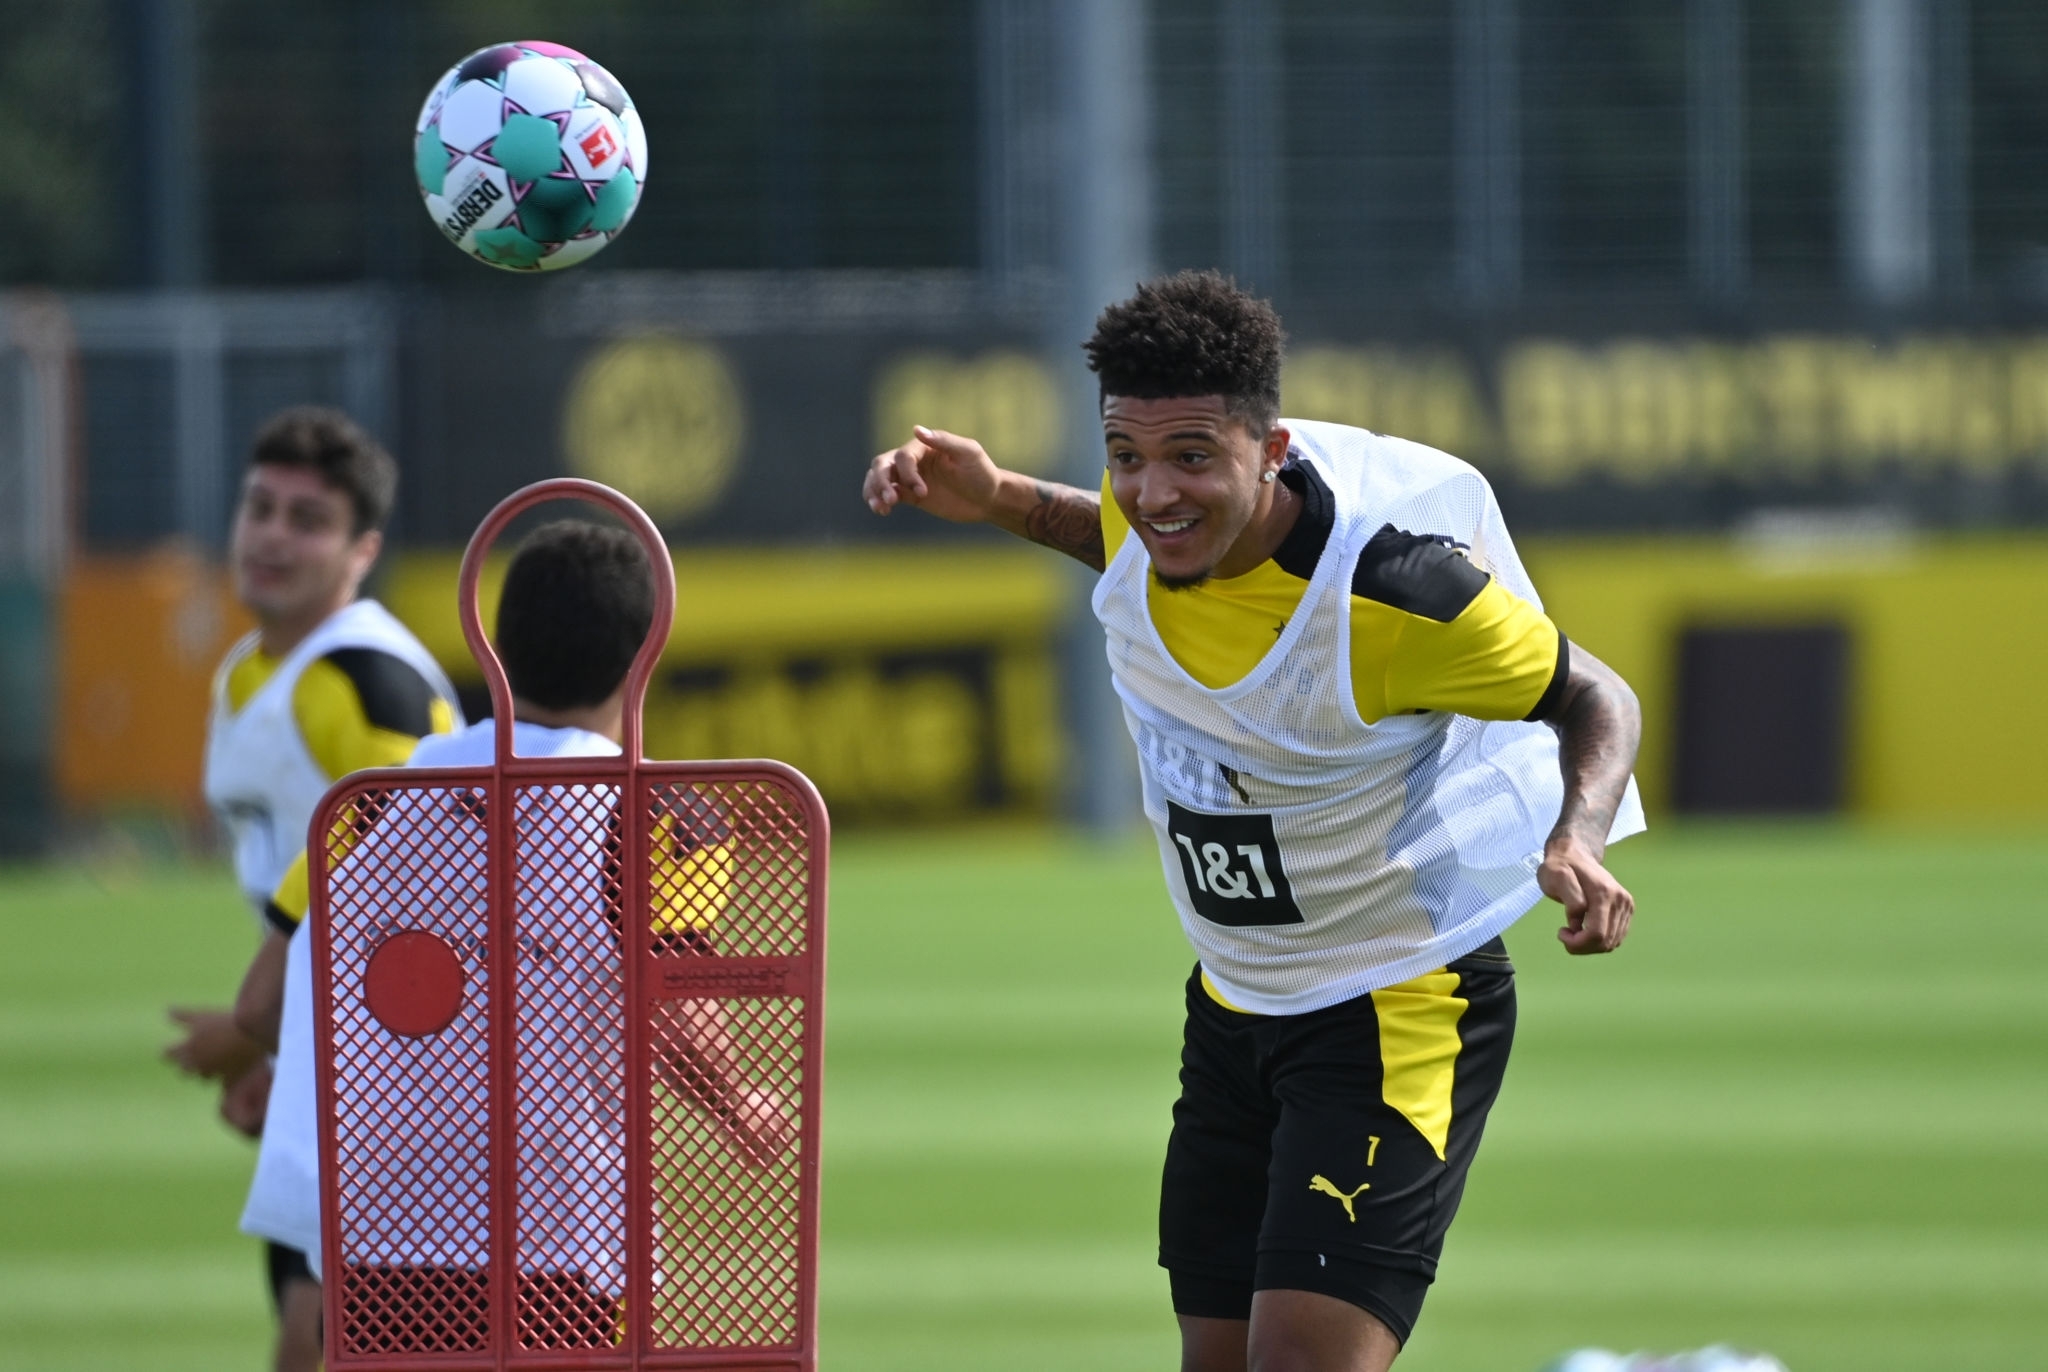 بروسیا دورتموند - بوندسلیگا - Borussia Dortmund - Bundesliga - تمرینات